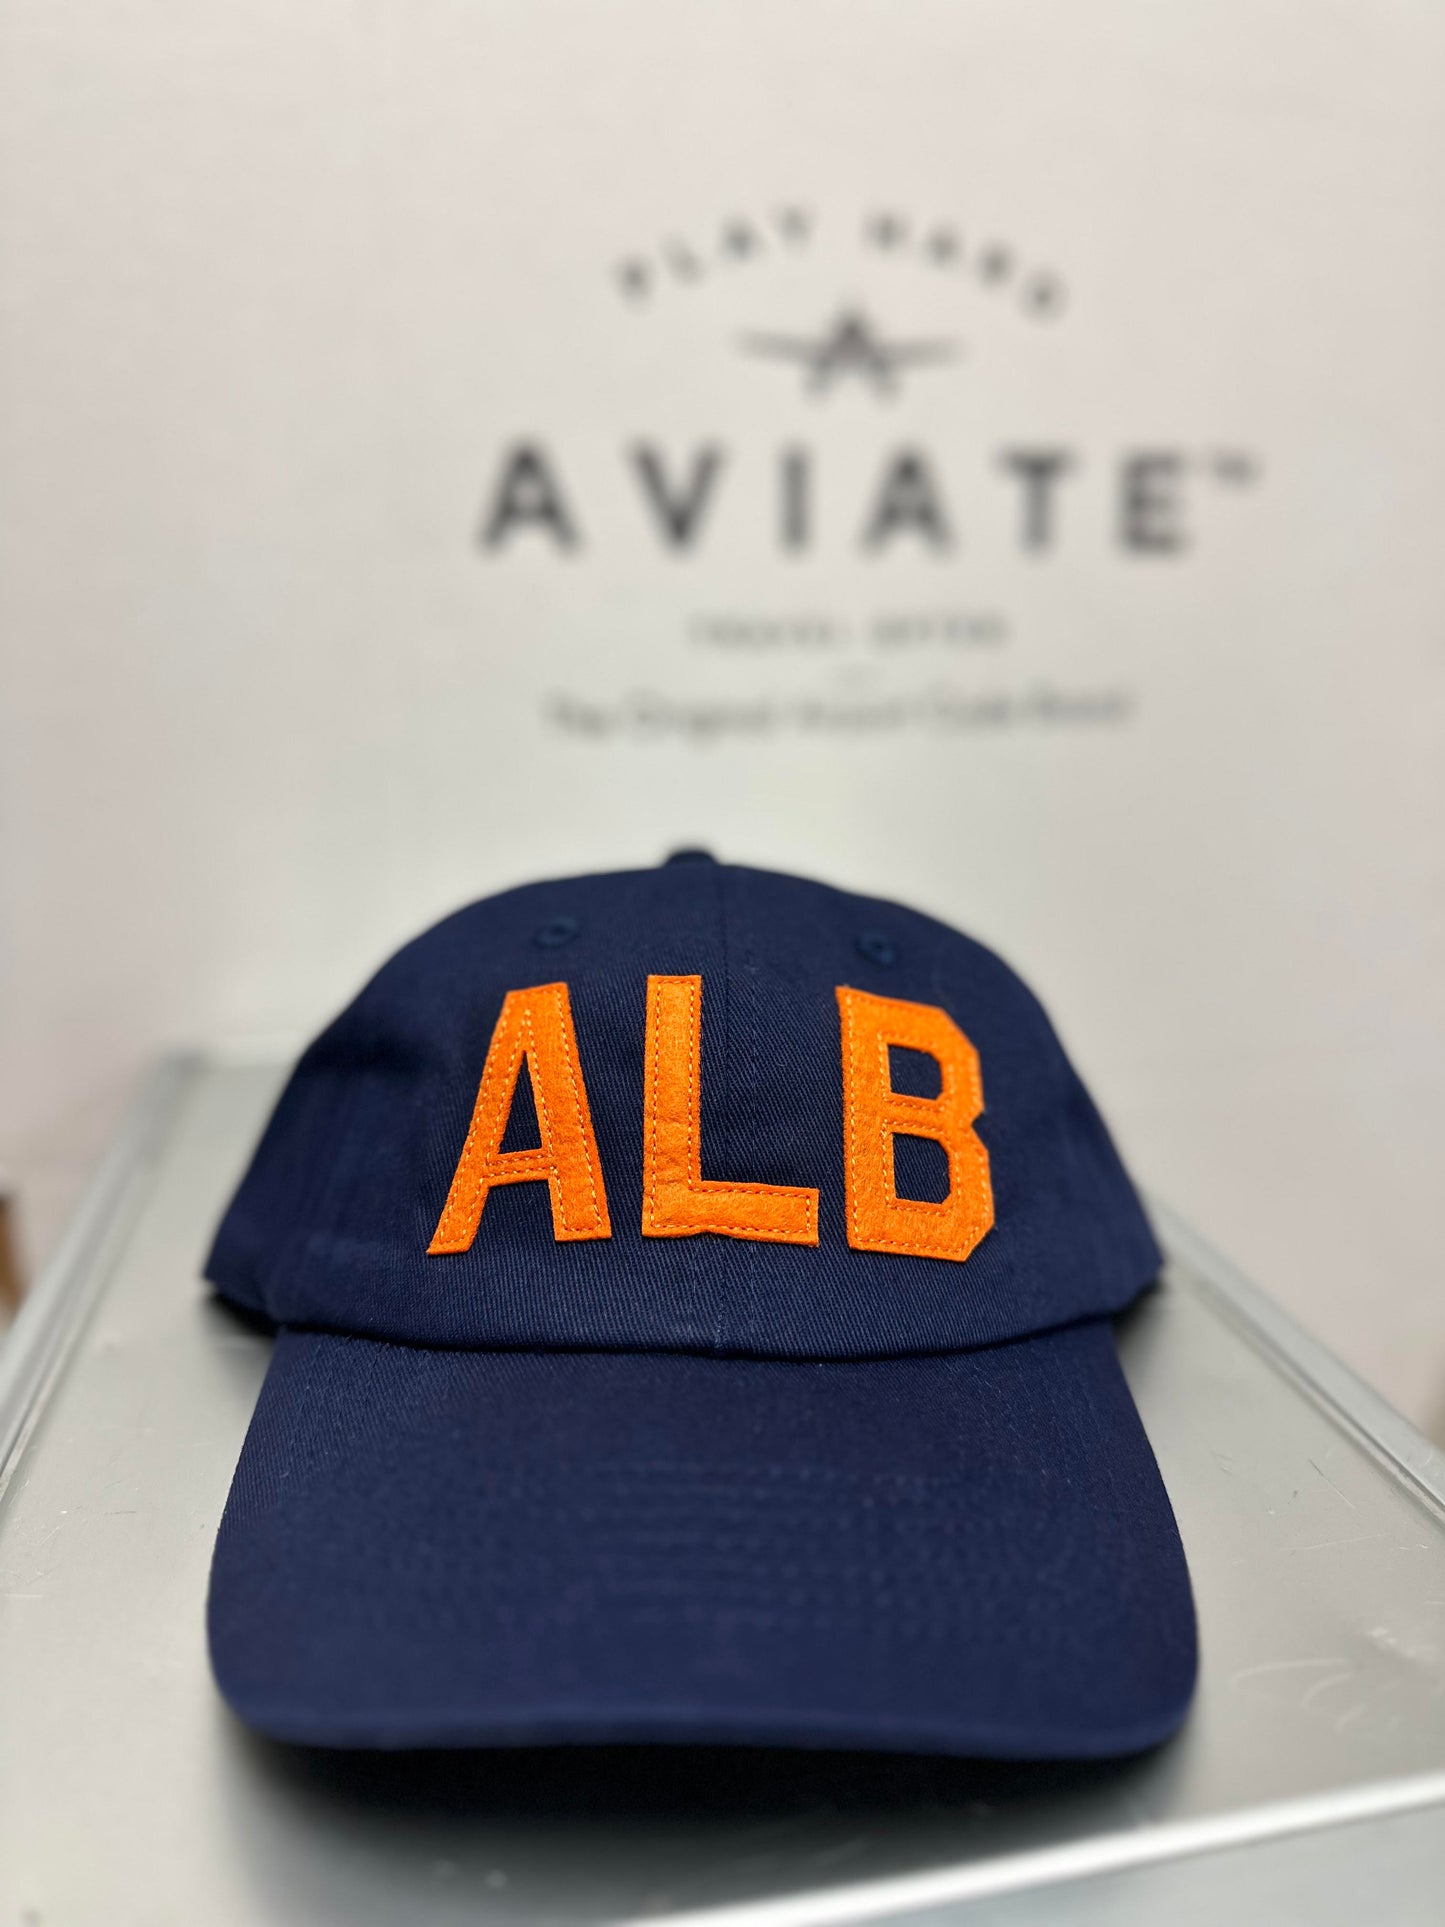 ALB - Albany, NY Hat